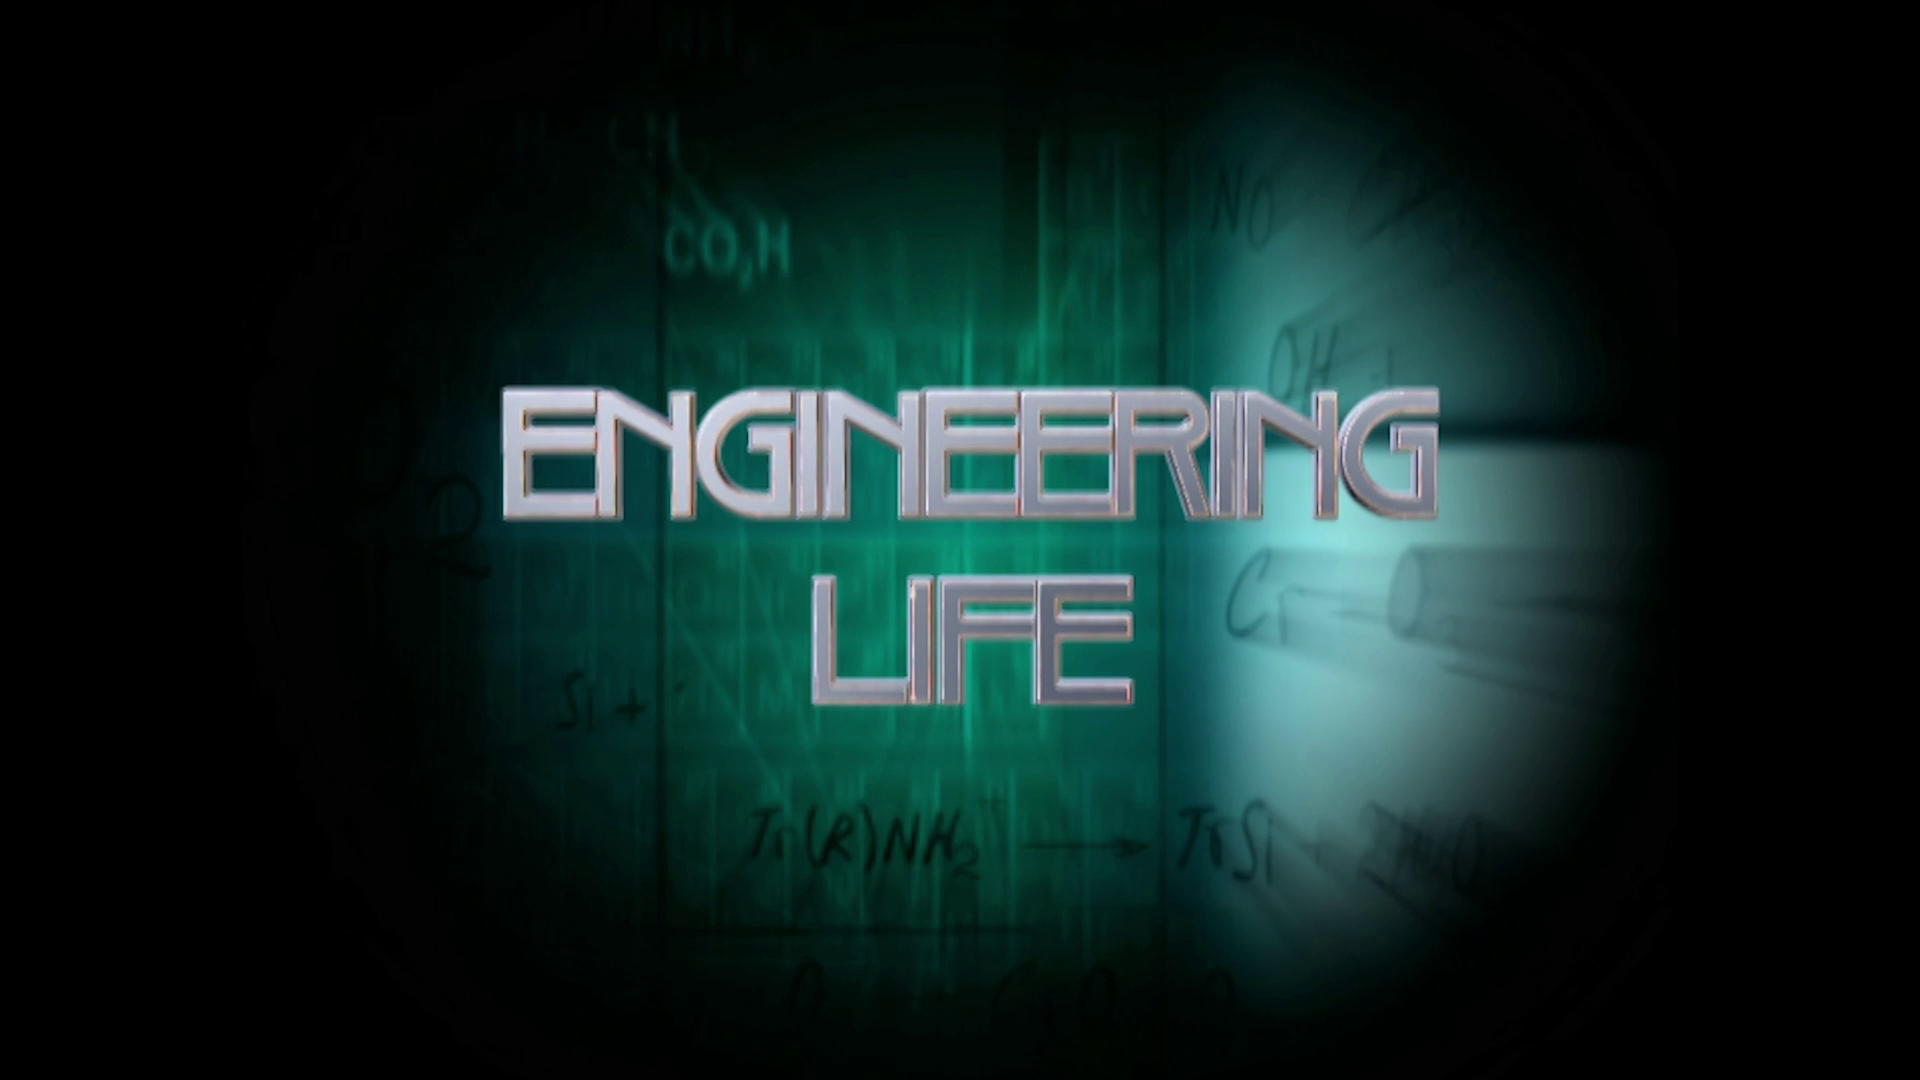 Species Engineering Life featurette